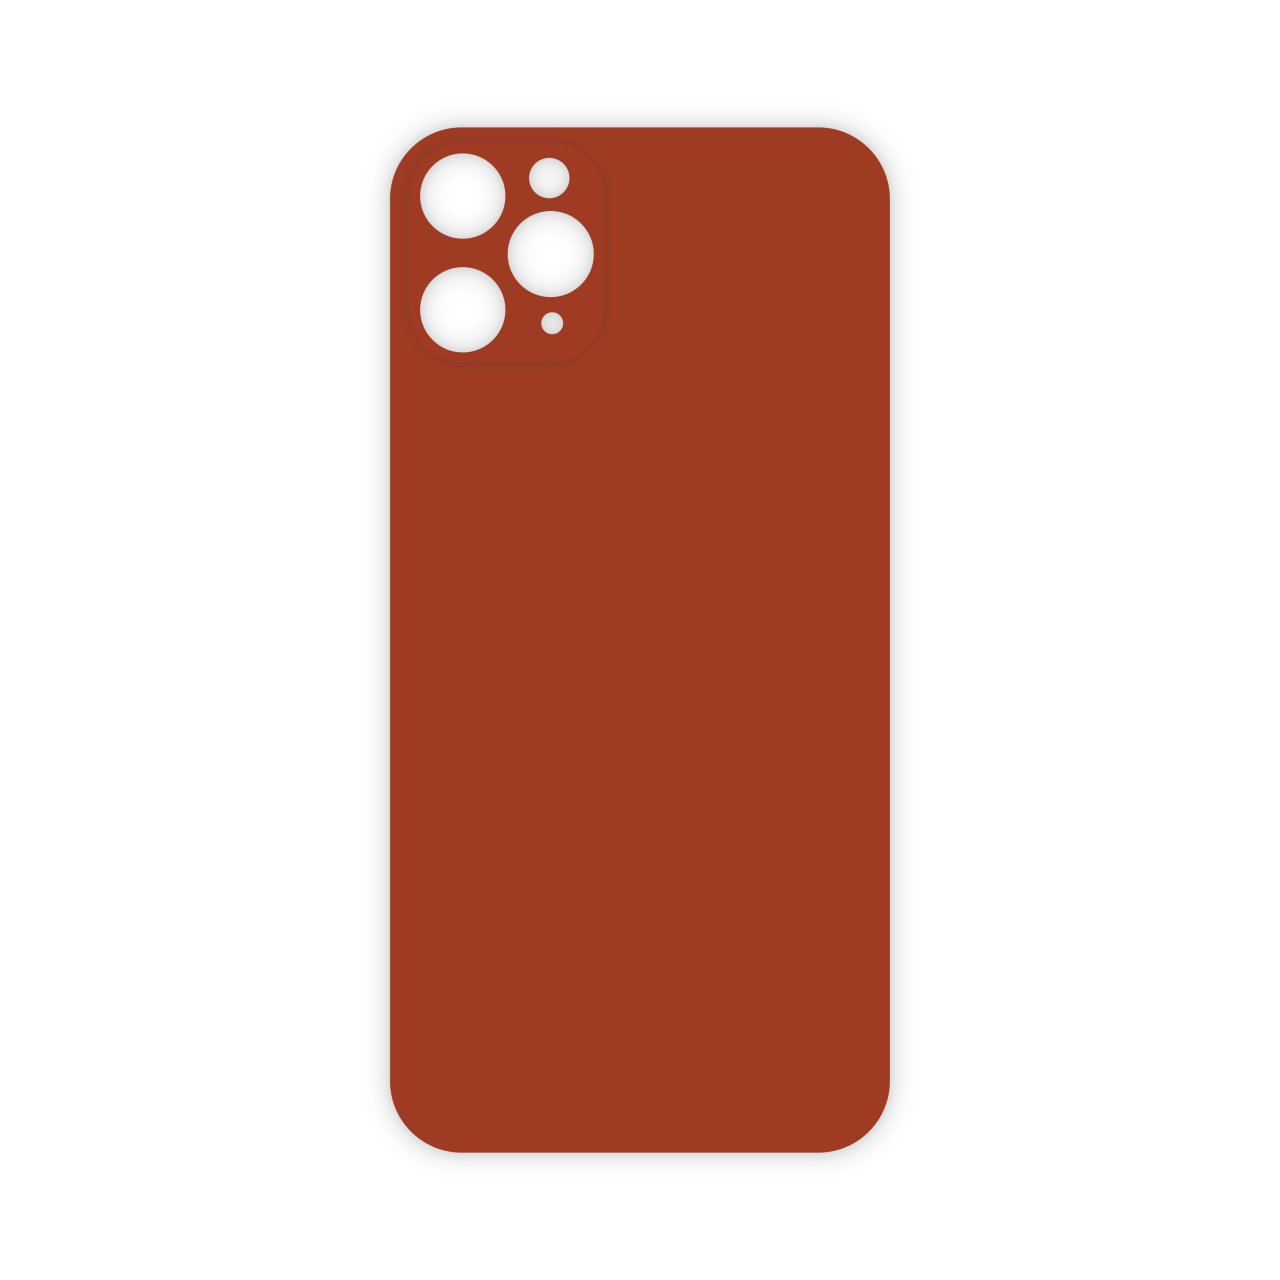 Mopal İphone 11 Pro Renkli Arka Jelatin Koruyucu Kırmızı